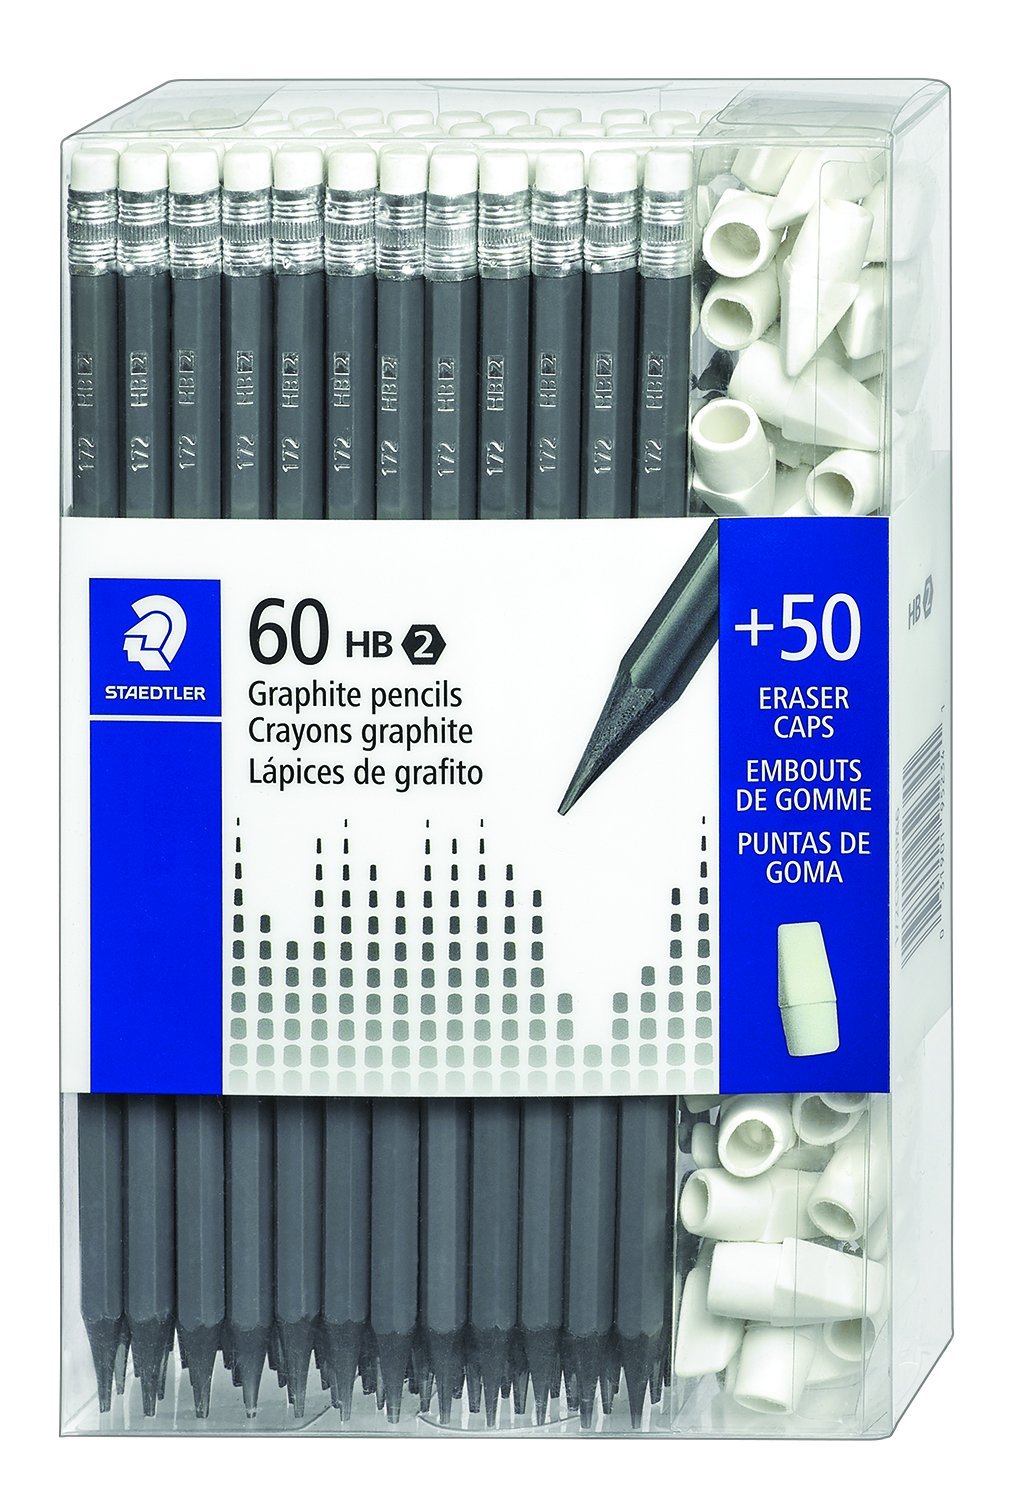 60 Count Graphite Pencil + Bonus 50 Eraser Caps Only $6.00!